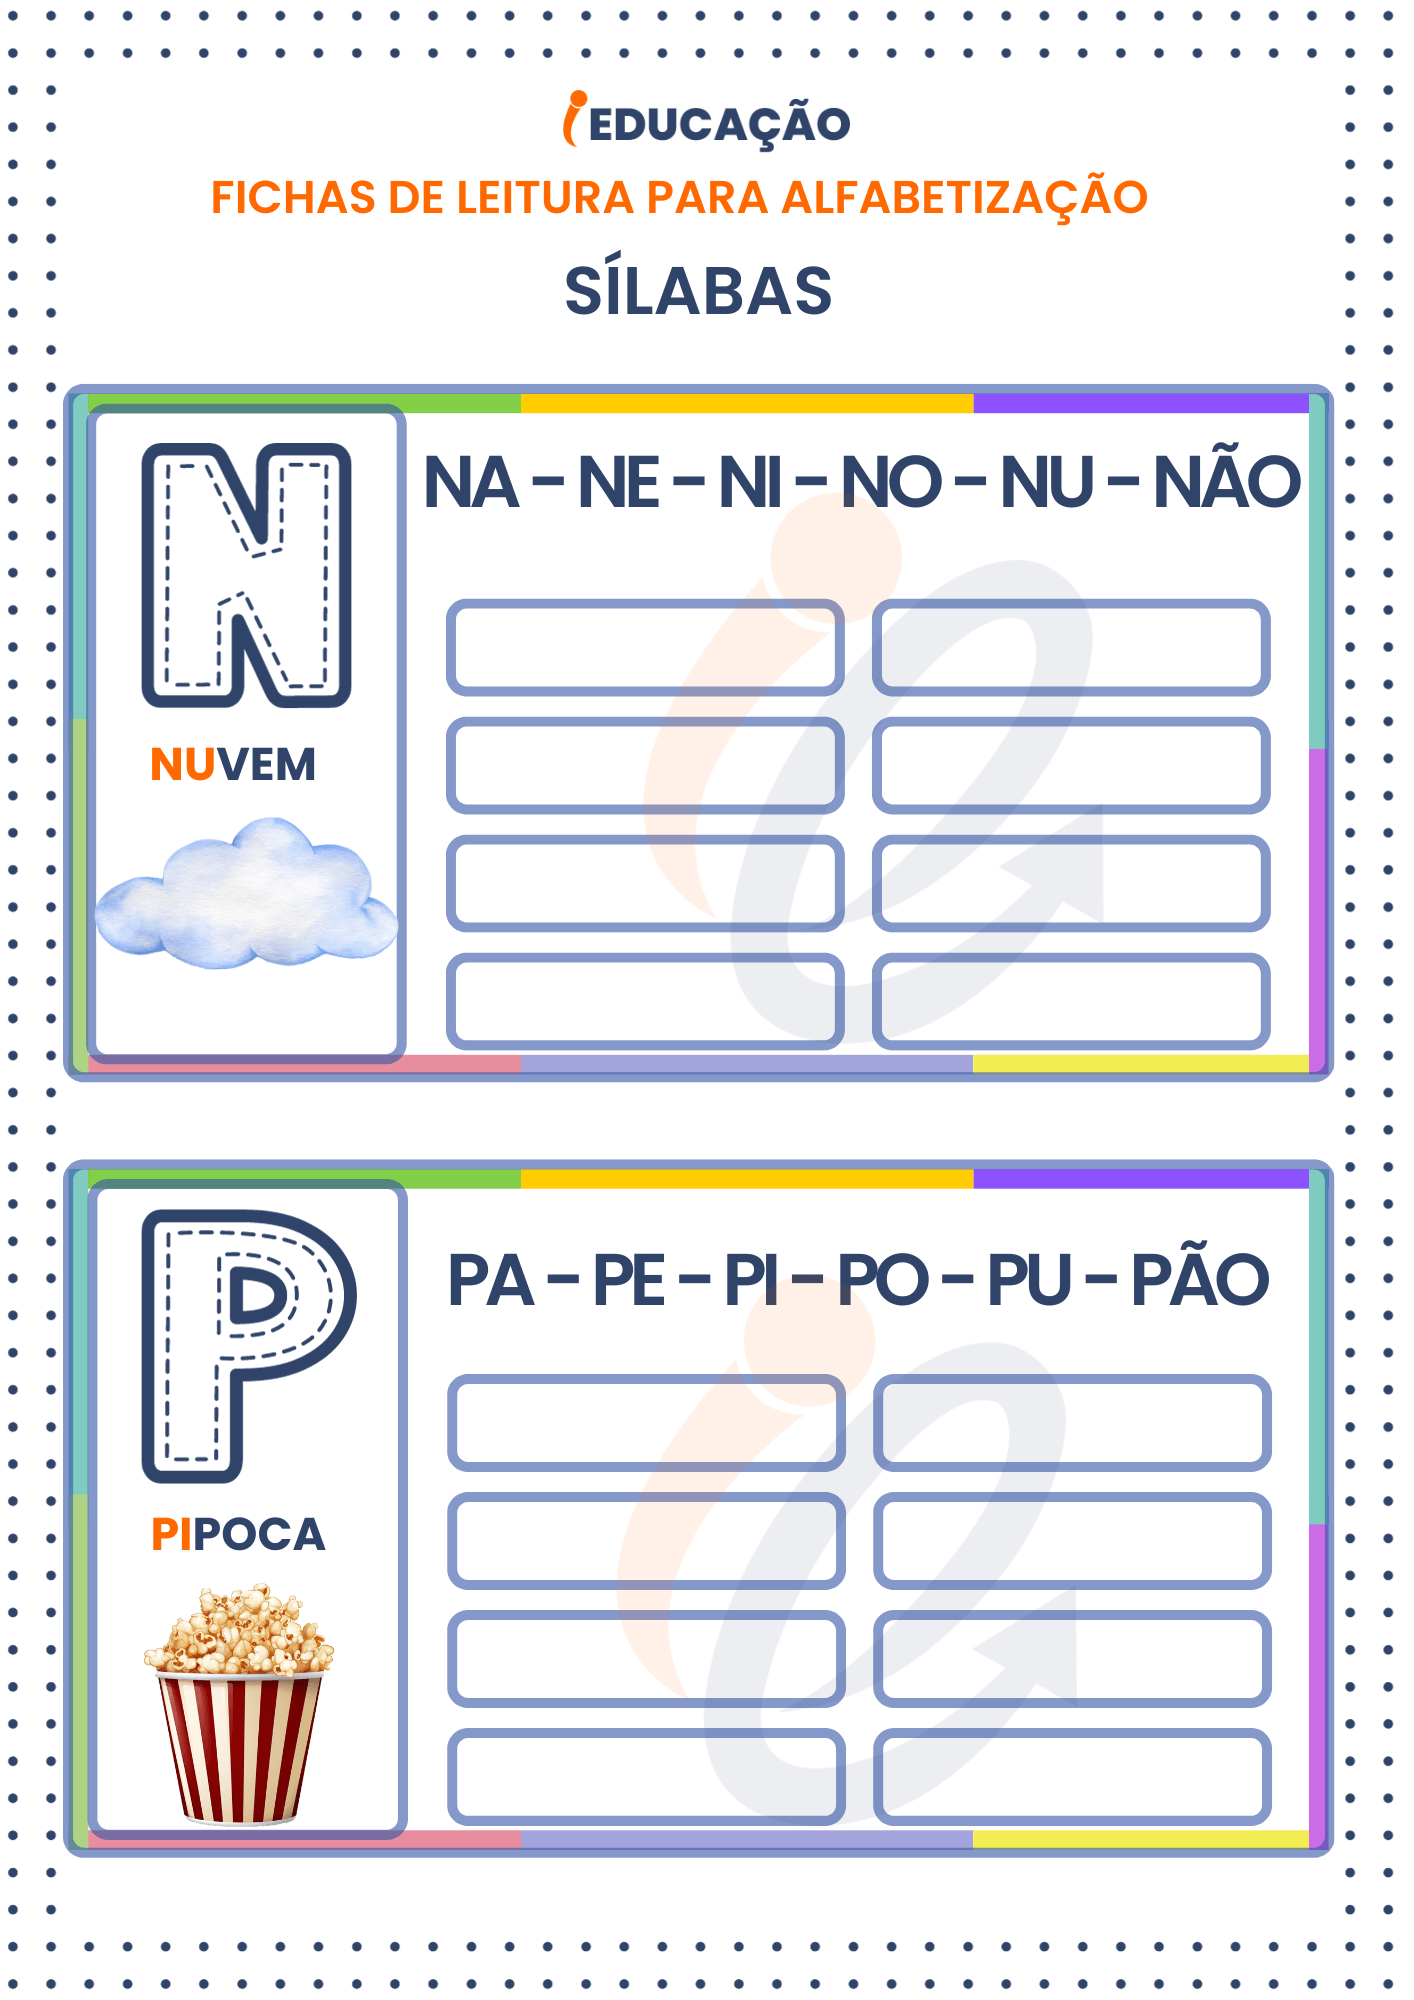 Fichas de Leitura Sílabas para Alfabetização: Sílabas das letras N e P